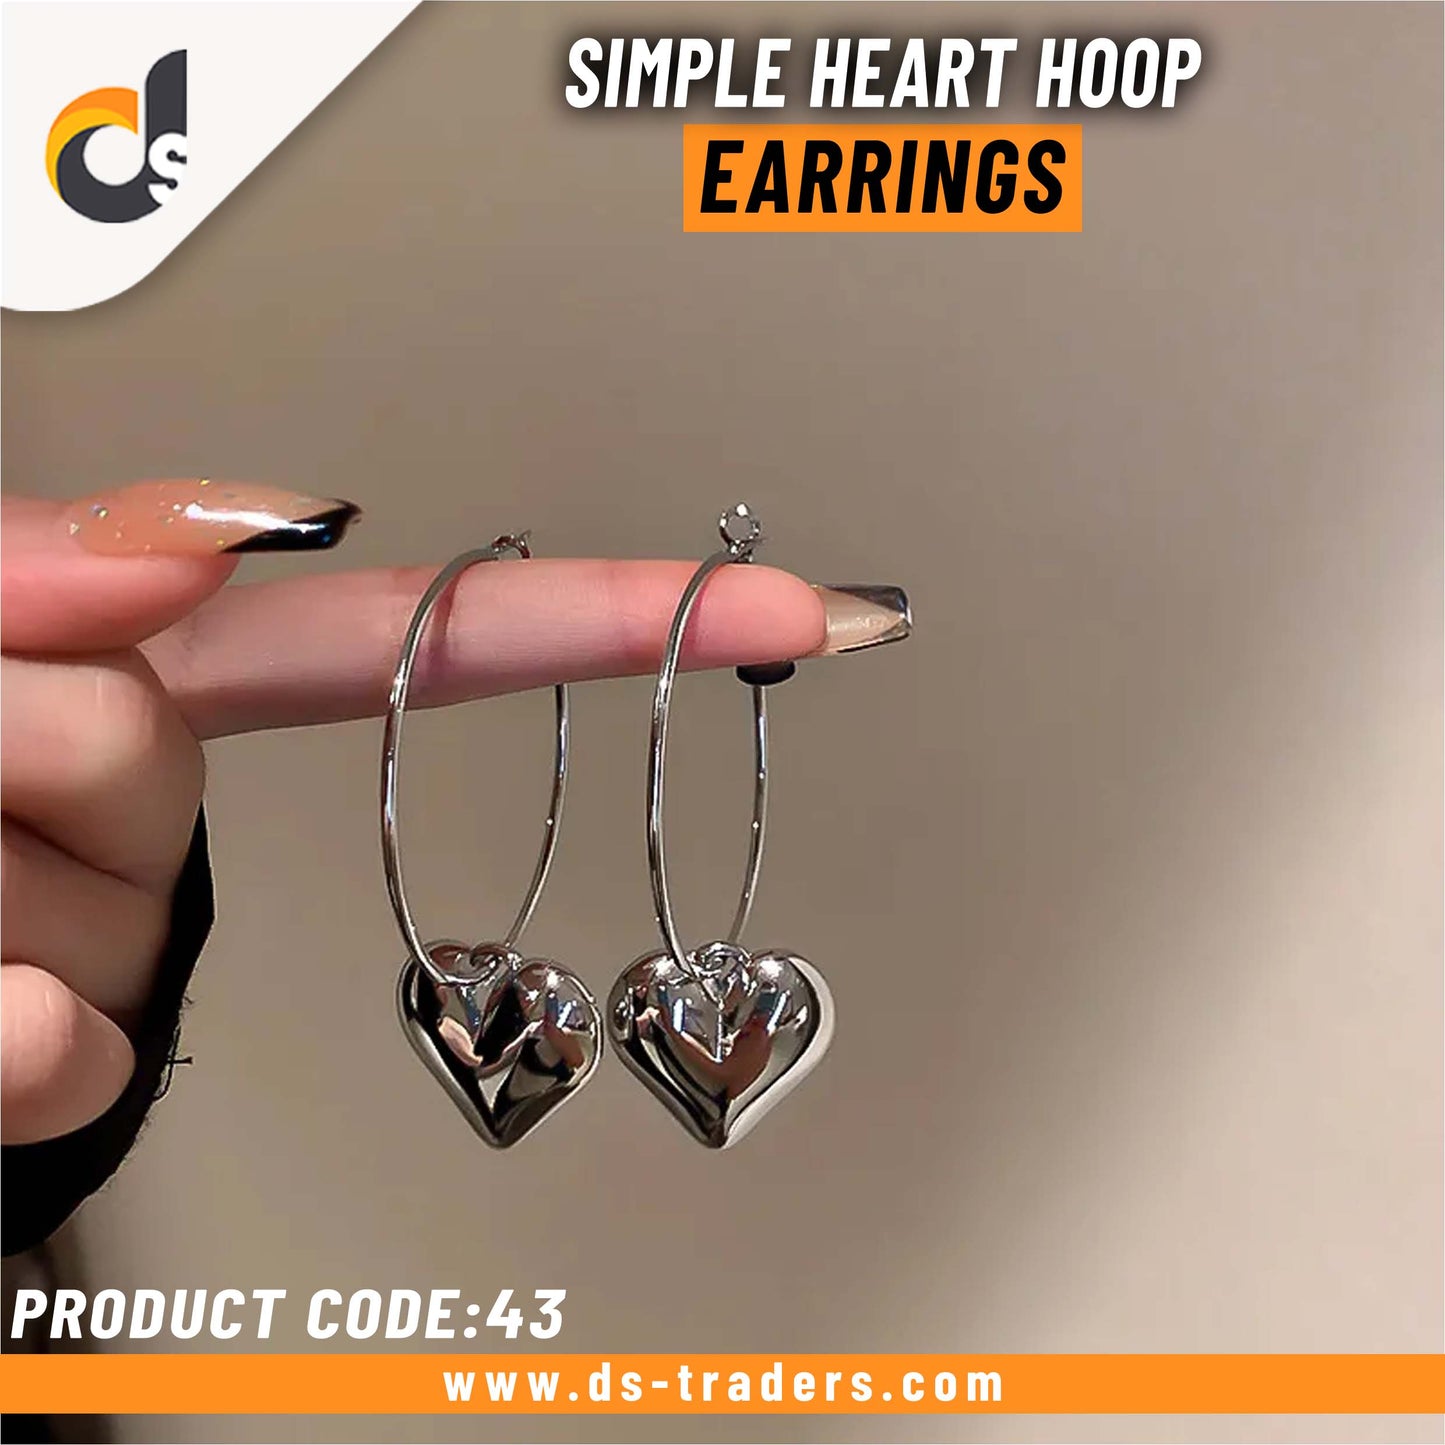 Simple Heart Hoop Earrings